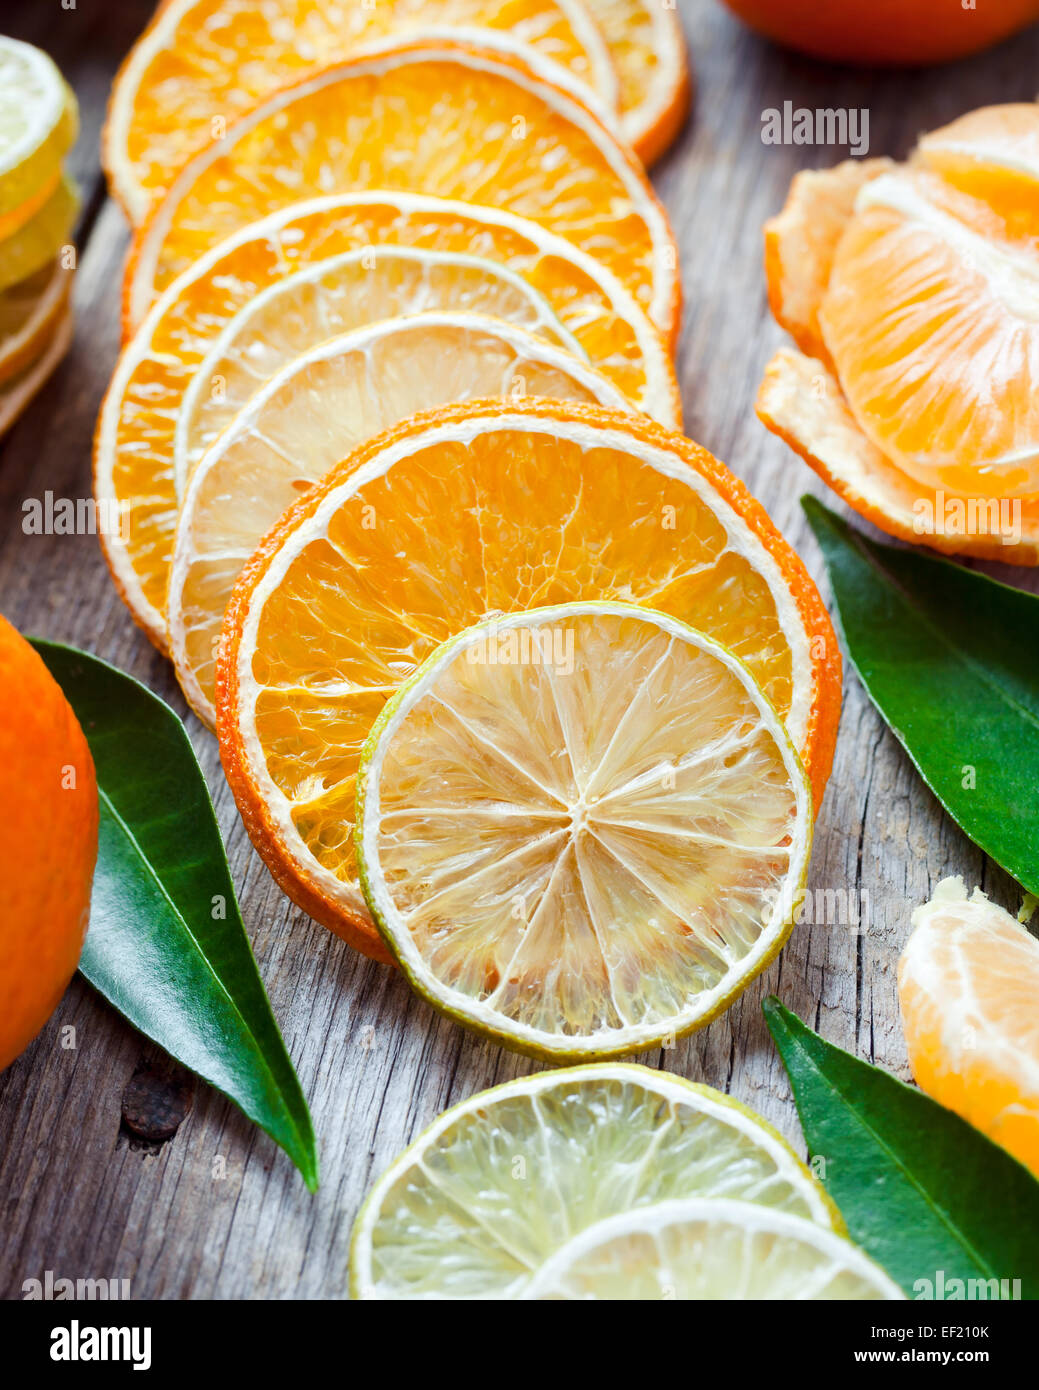 Les tranches de citron et d'orange séchée, ripe tangerines sur la vieille table en bois. Banque D'Images